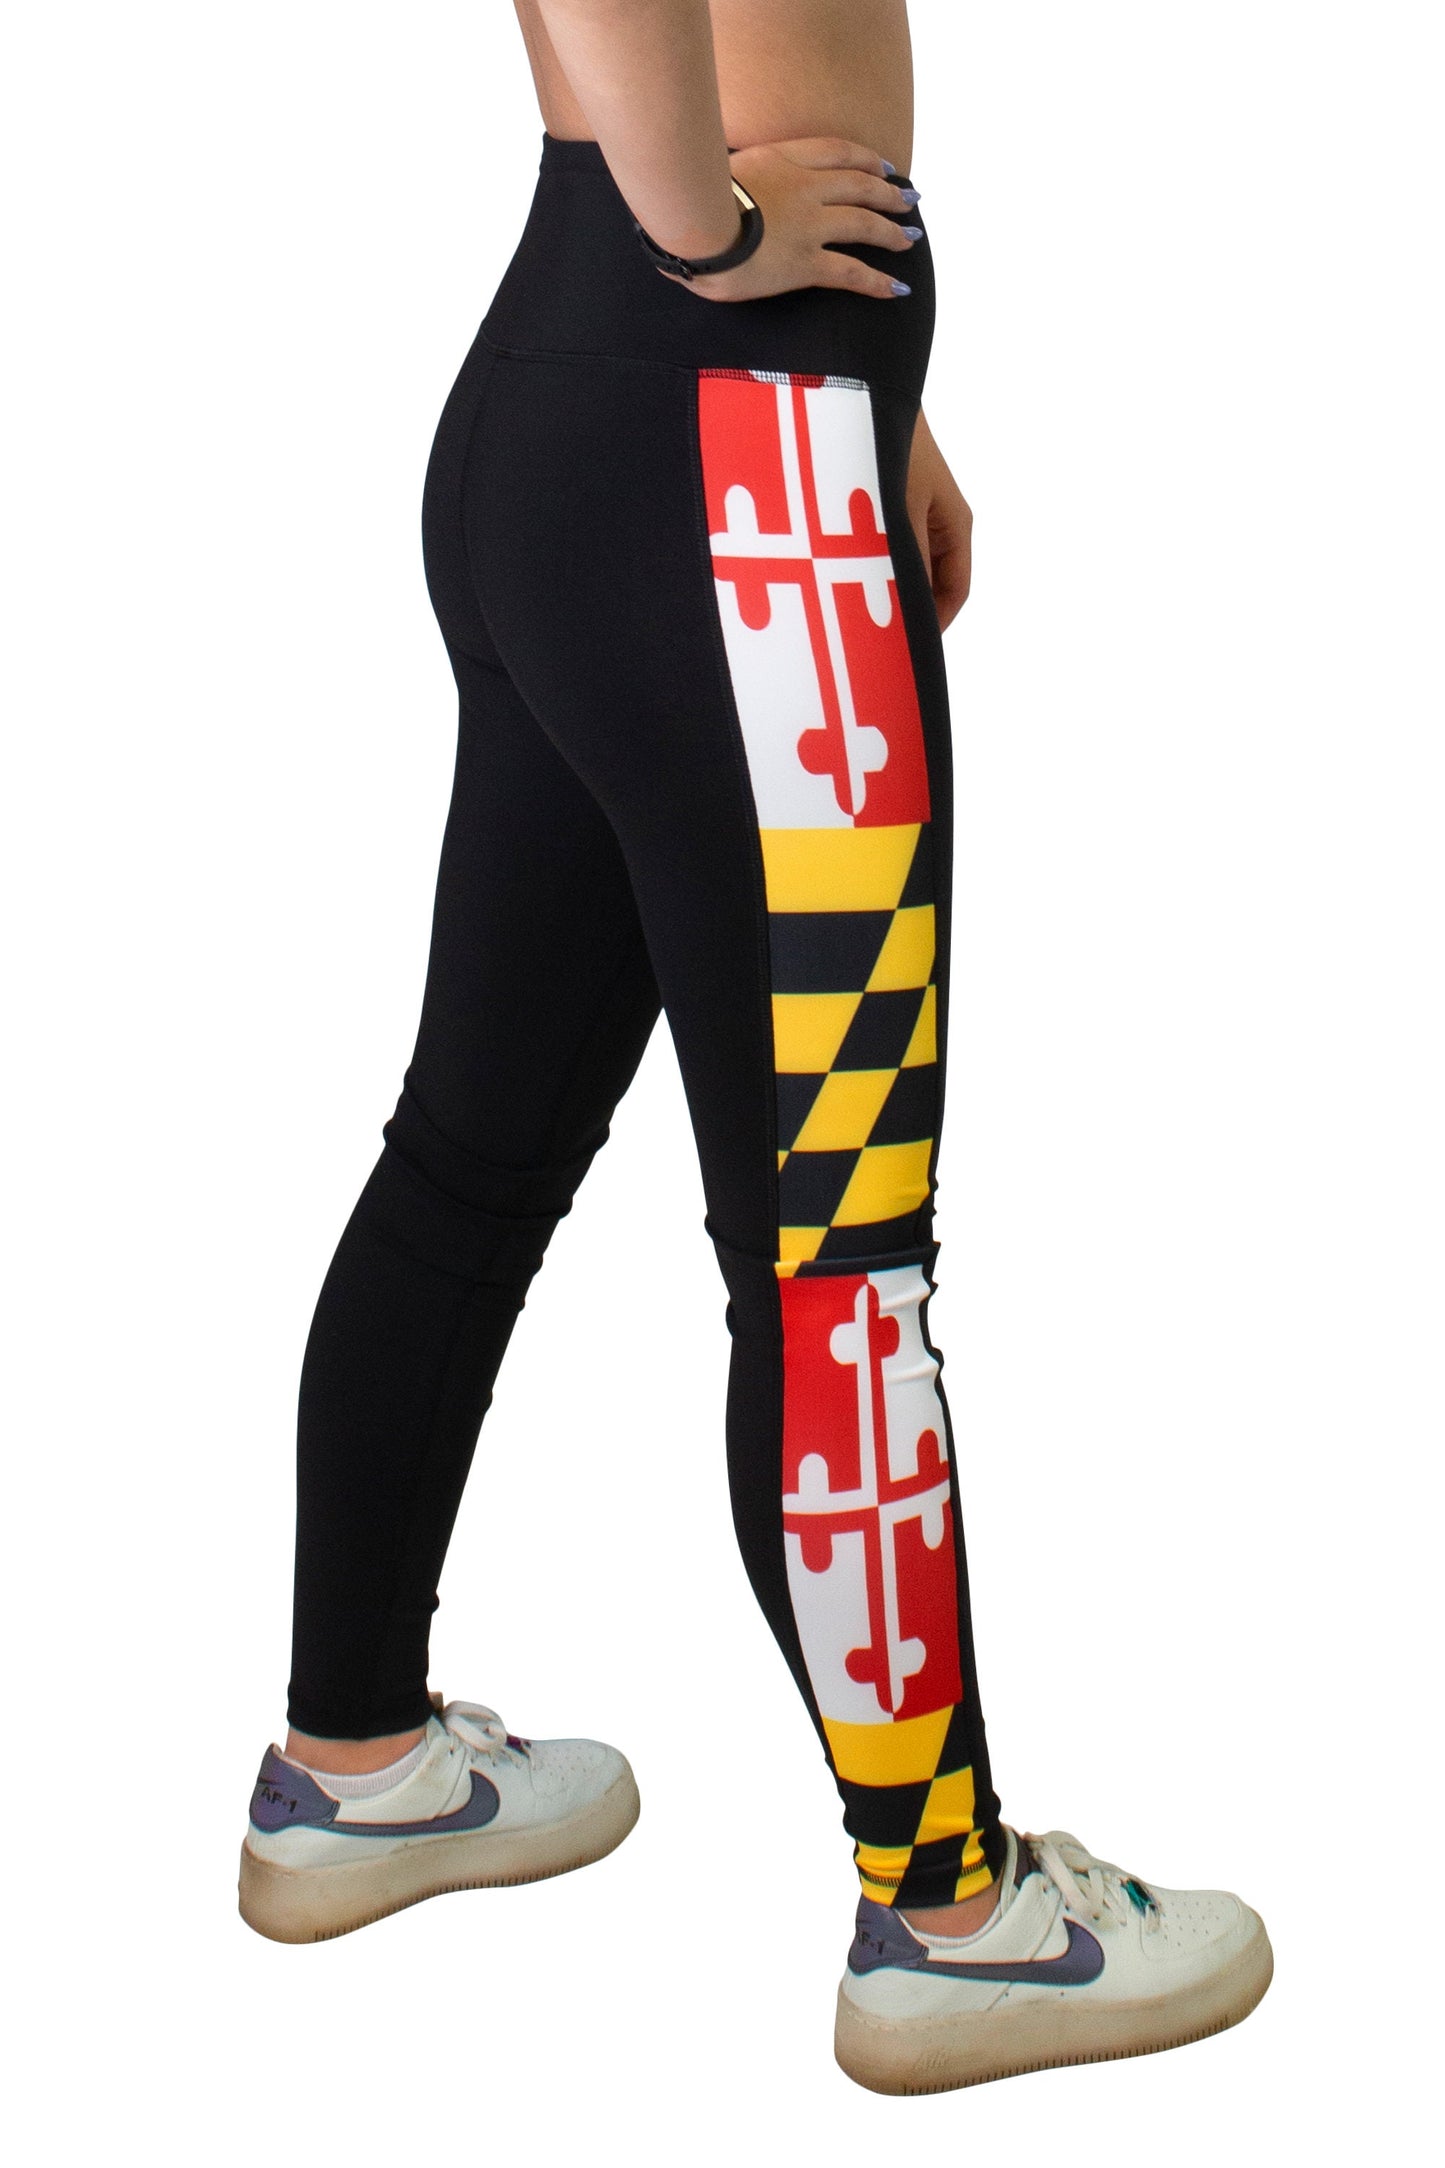 Maryland Flag Women's Full Length Yoga Pant Leggings (Black)